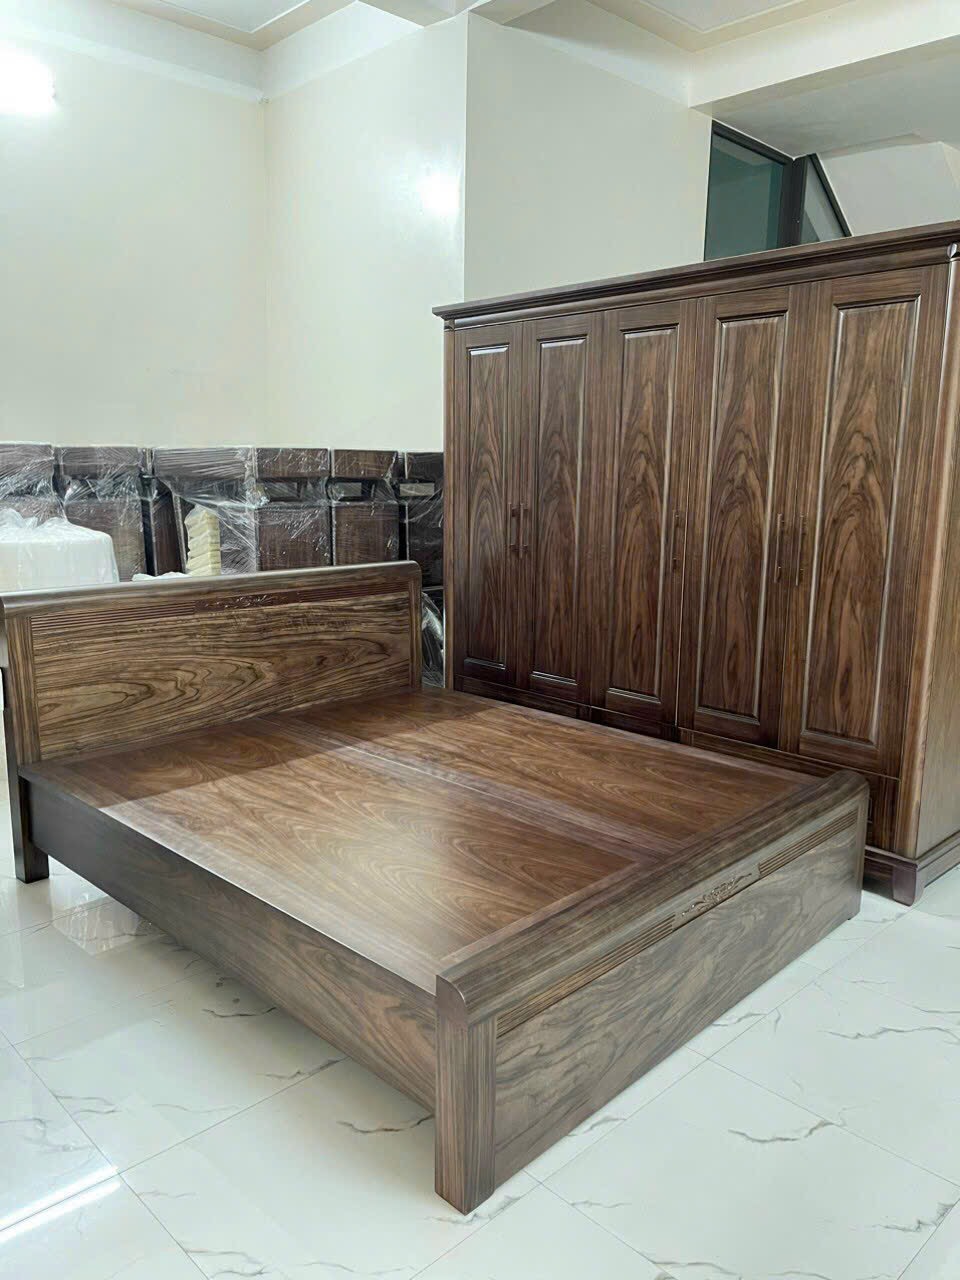 Giường ngủ gỗ mang đến một cảm giác thoải mái